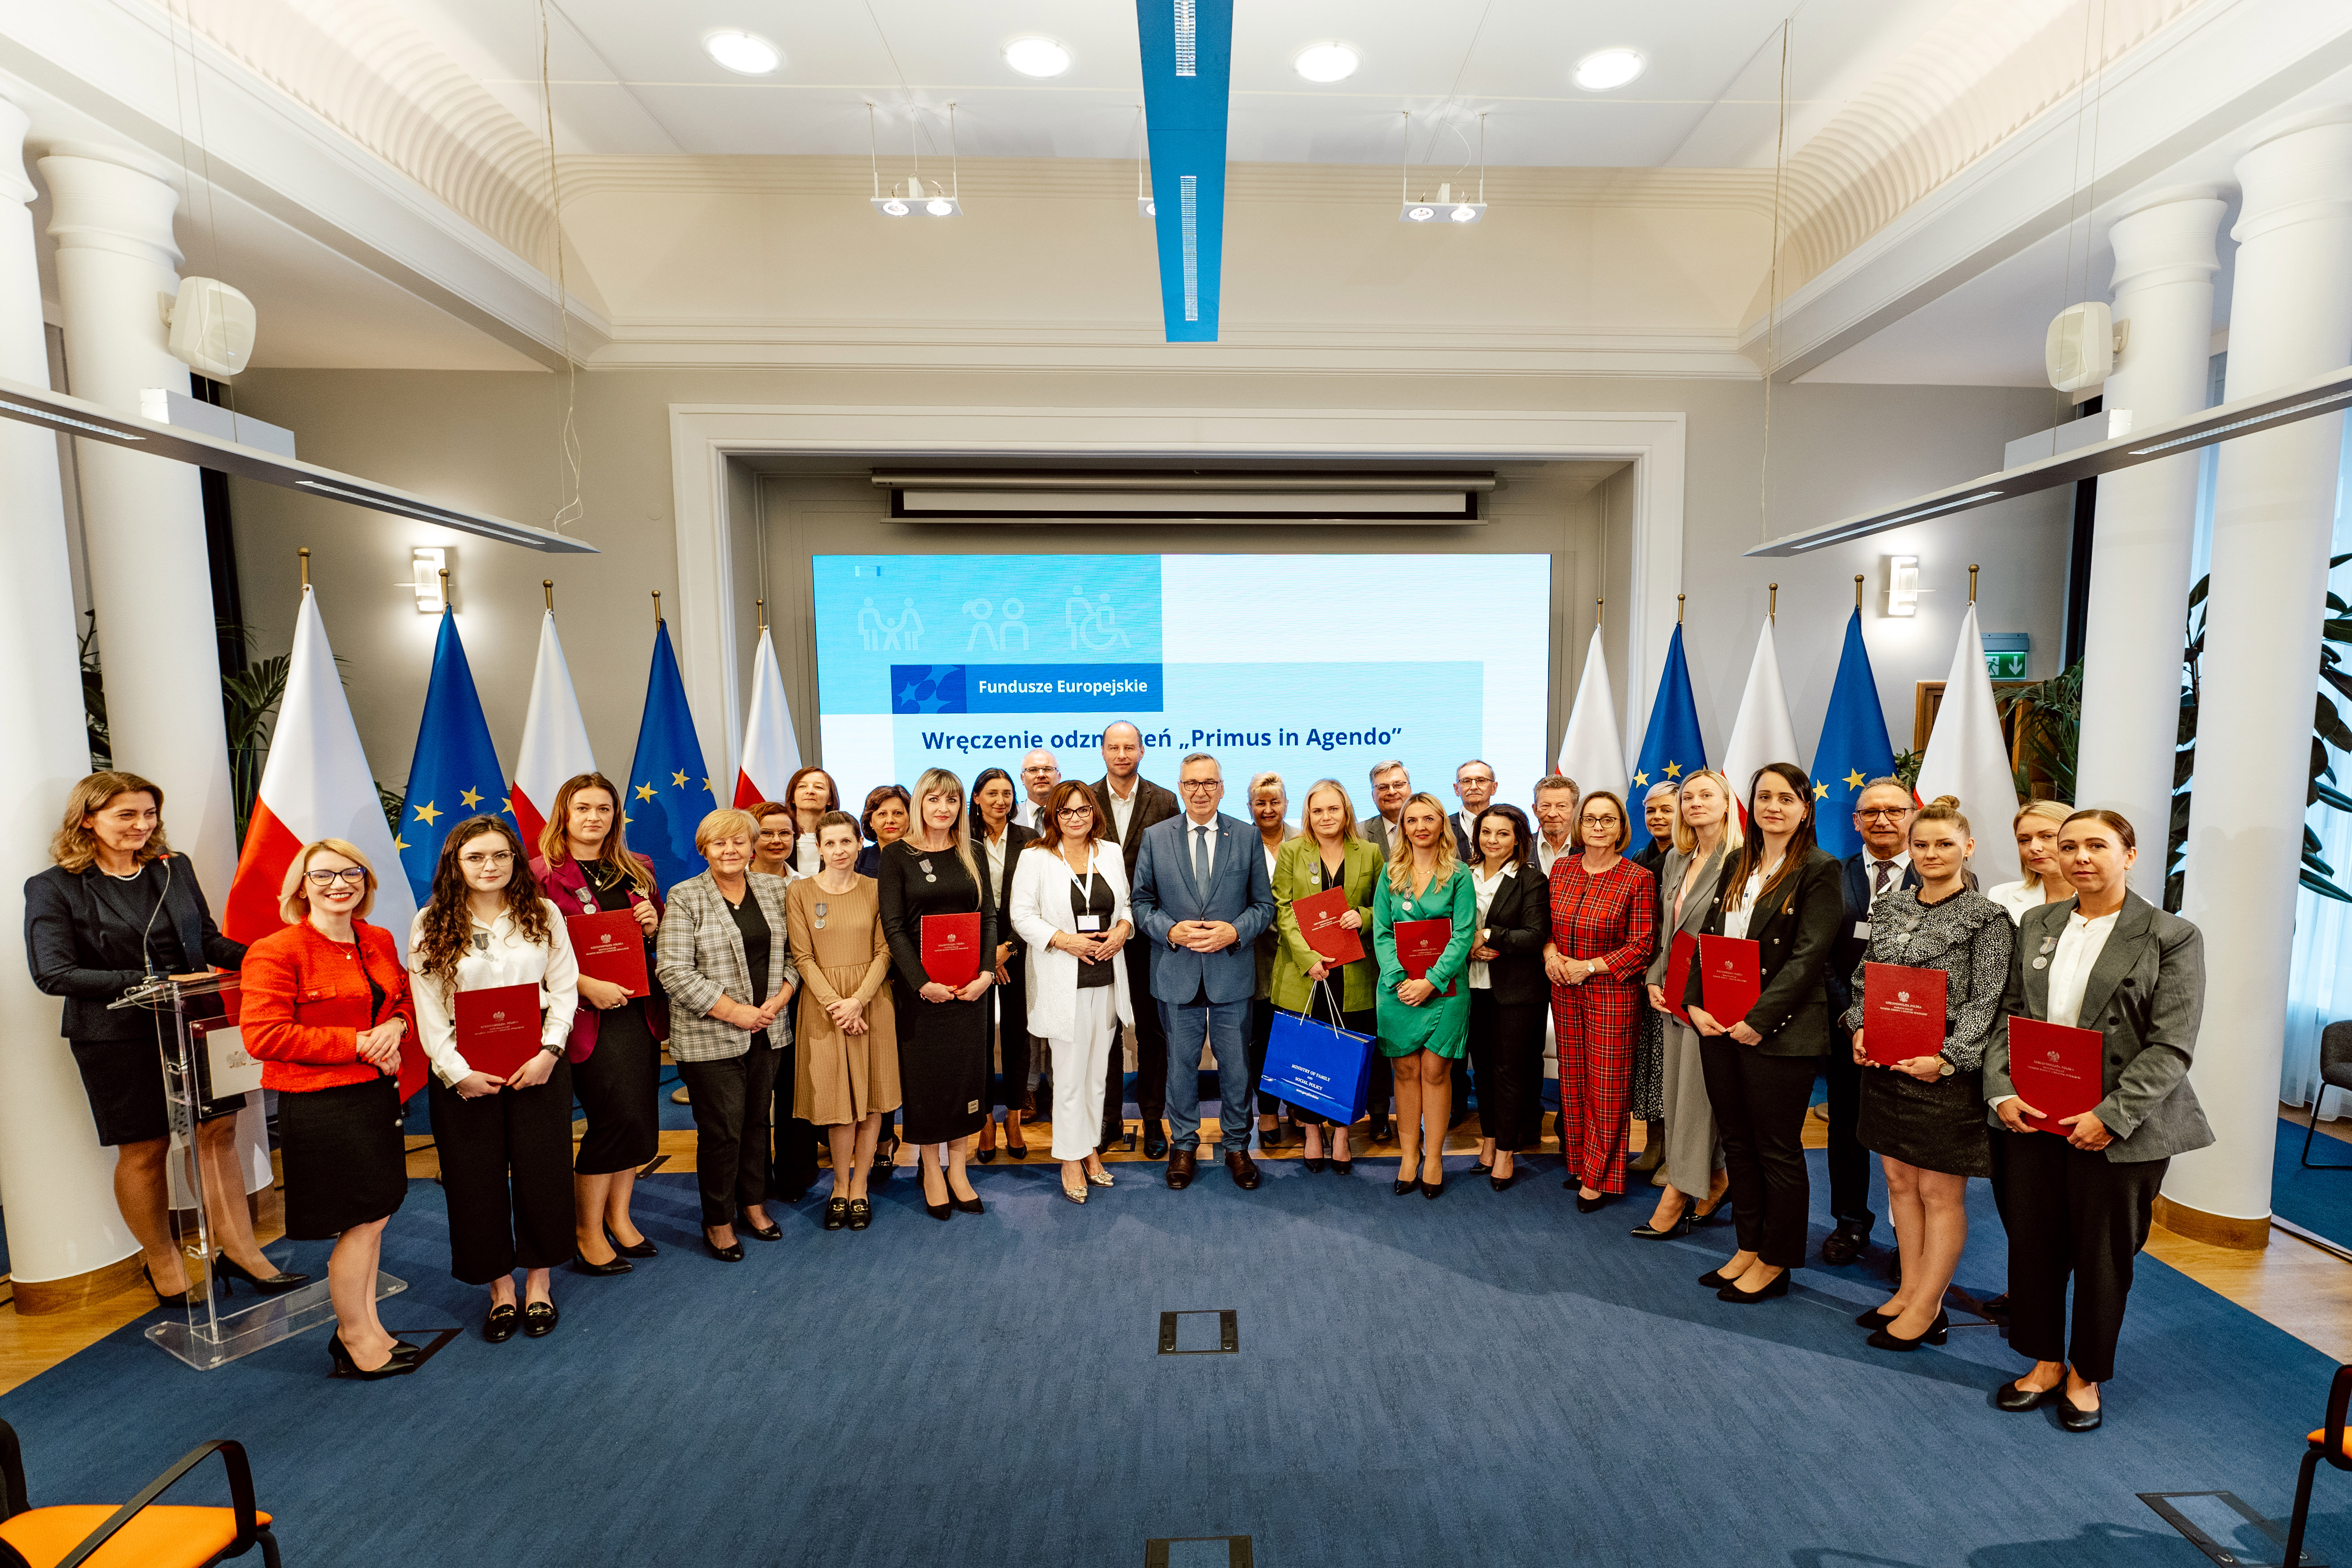 Konferencja "Fundusze Europejskie w MRiPS" - zjęcie przedstawiające Ministra Stanisława Szweda z uczestnikami konferencji uhonorowanymi odznaczeniem "Primus in Agendo"